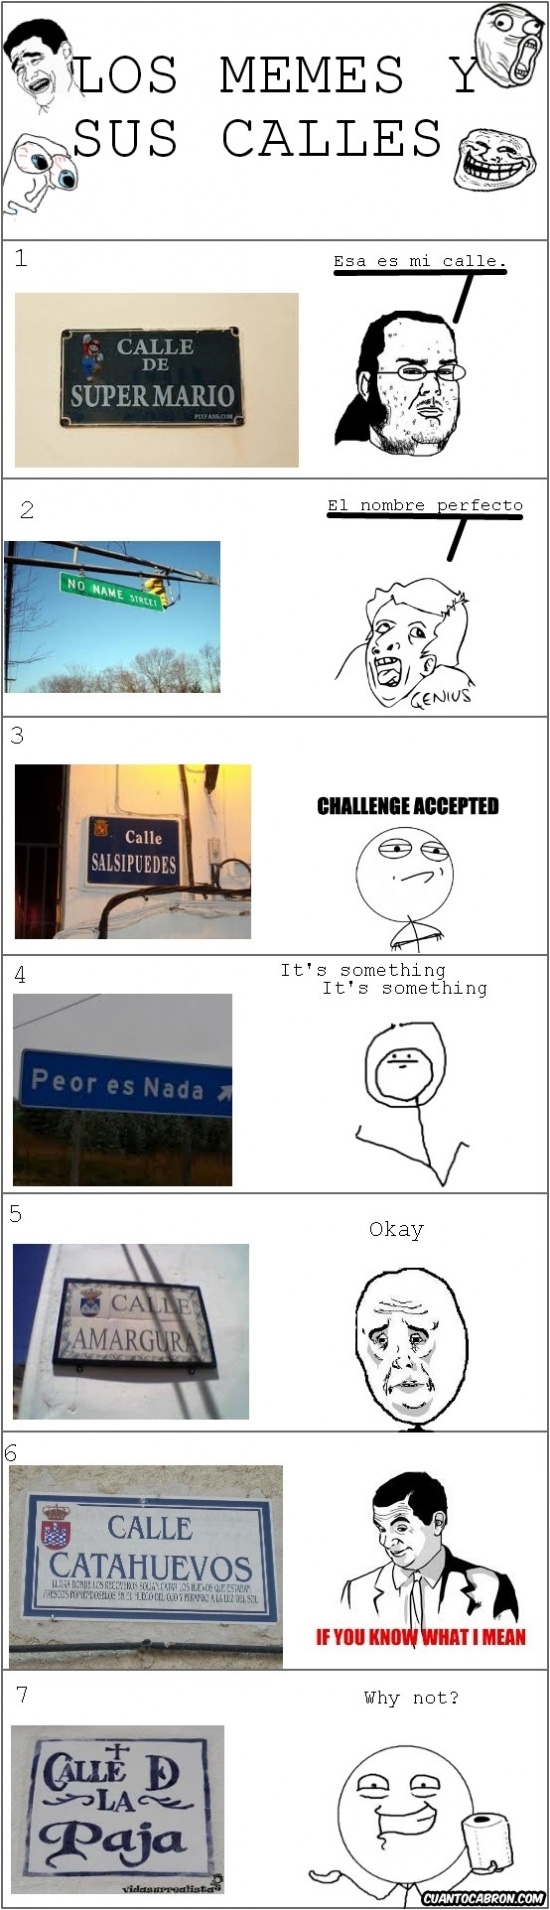 Challenge_accepted - Los memes y sus calles